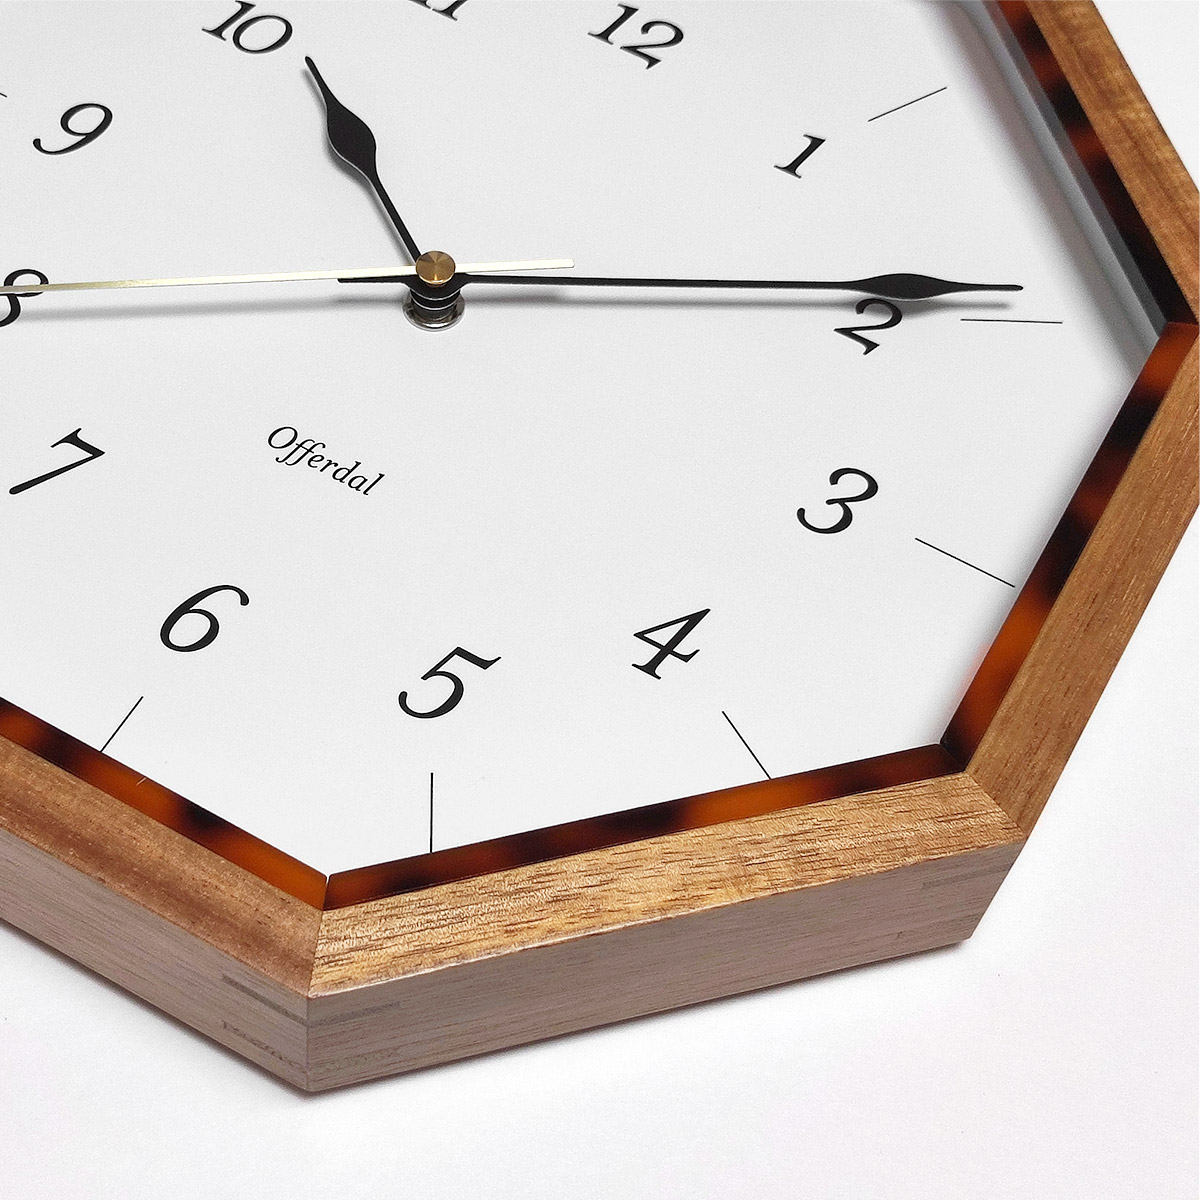 掛け時計 壁掛け時計 おしゃれ 時計 八角形 ウォールクロック 木製 木 